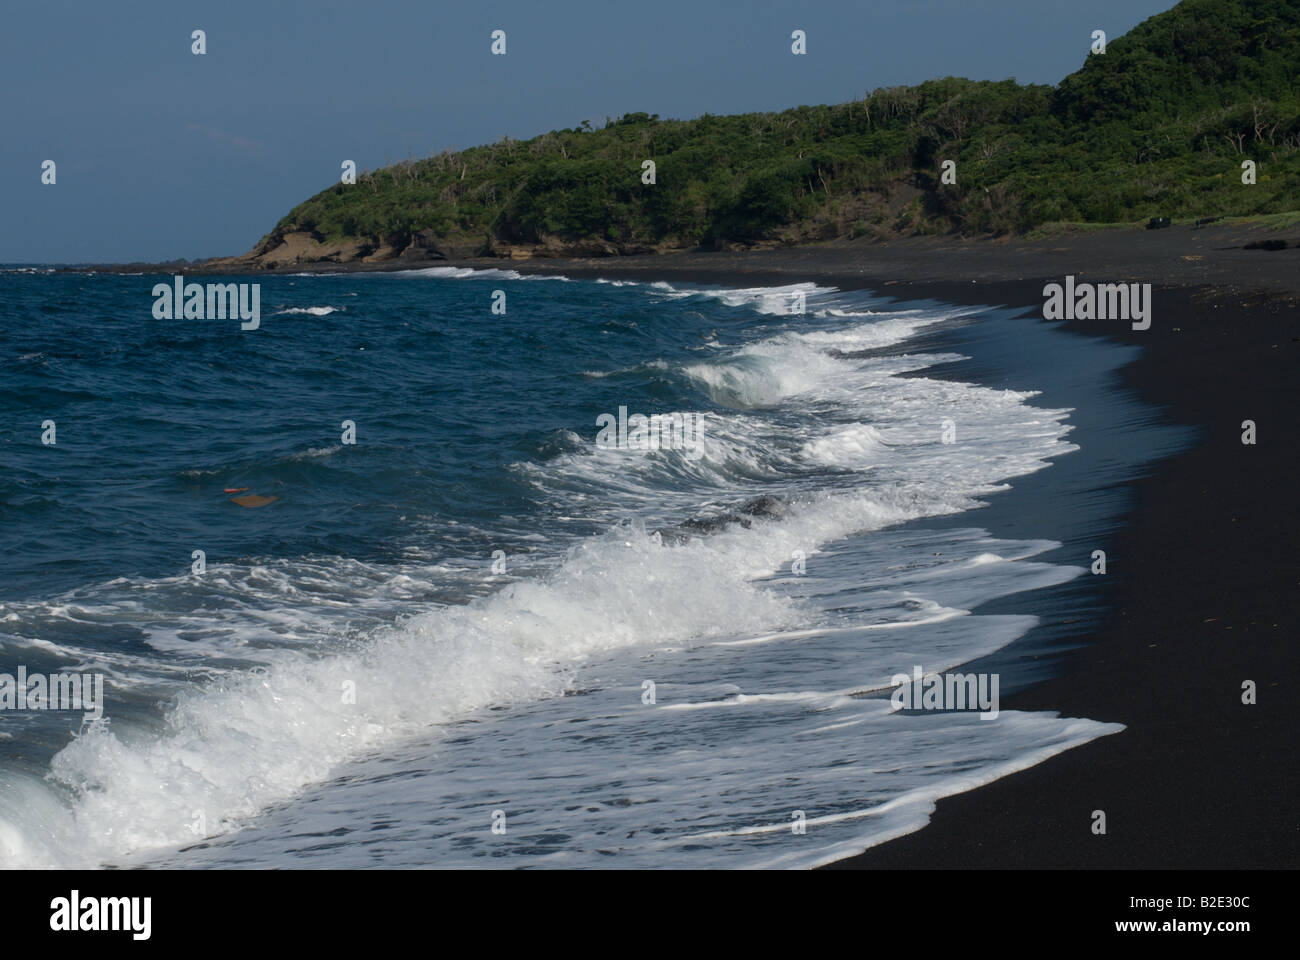 Sanohama beach avec des vagues se brisant sur le sable volcanique noir, Izu Oshima, îles Izu, Japon. Banque D'Images